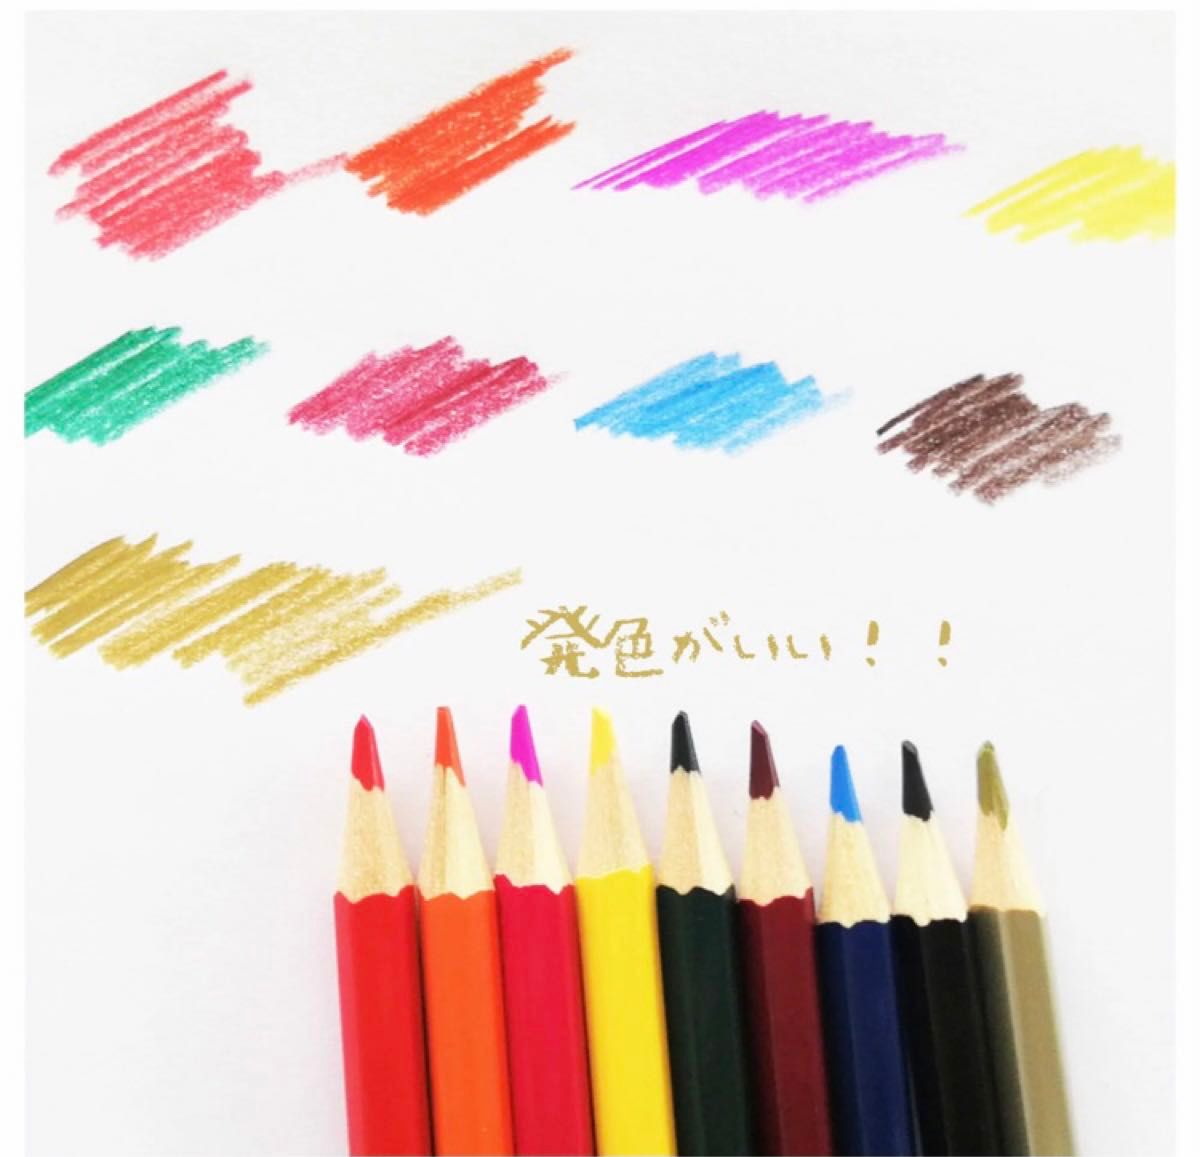 72色 油性色鉛筆 可愛い 収納バック付き 色鉛筆セット 鉛筆削り付き 色鉛筆 いろえんぴつ 油性 塗り絵 スケッチ 